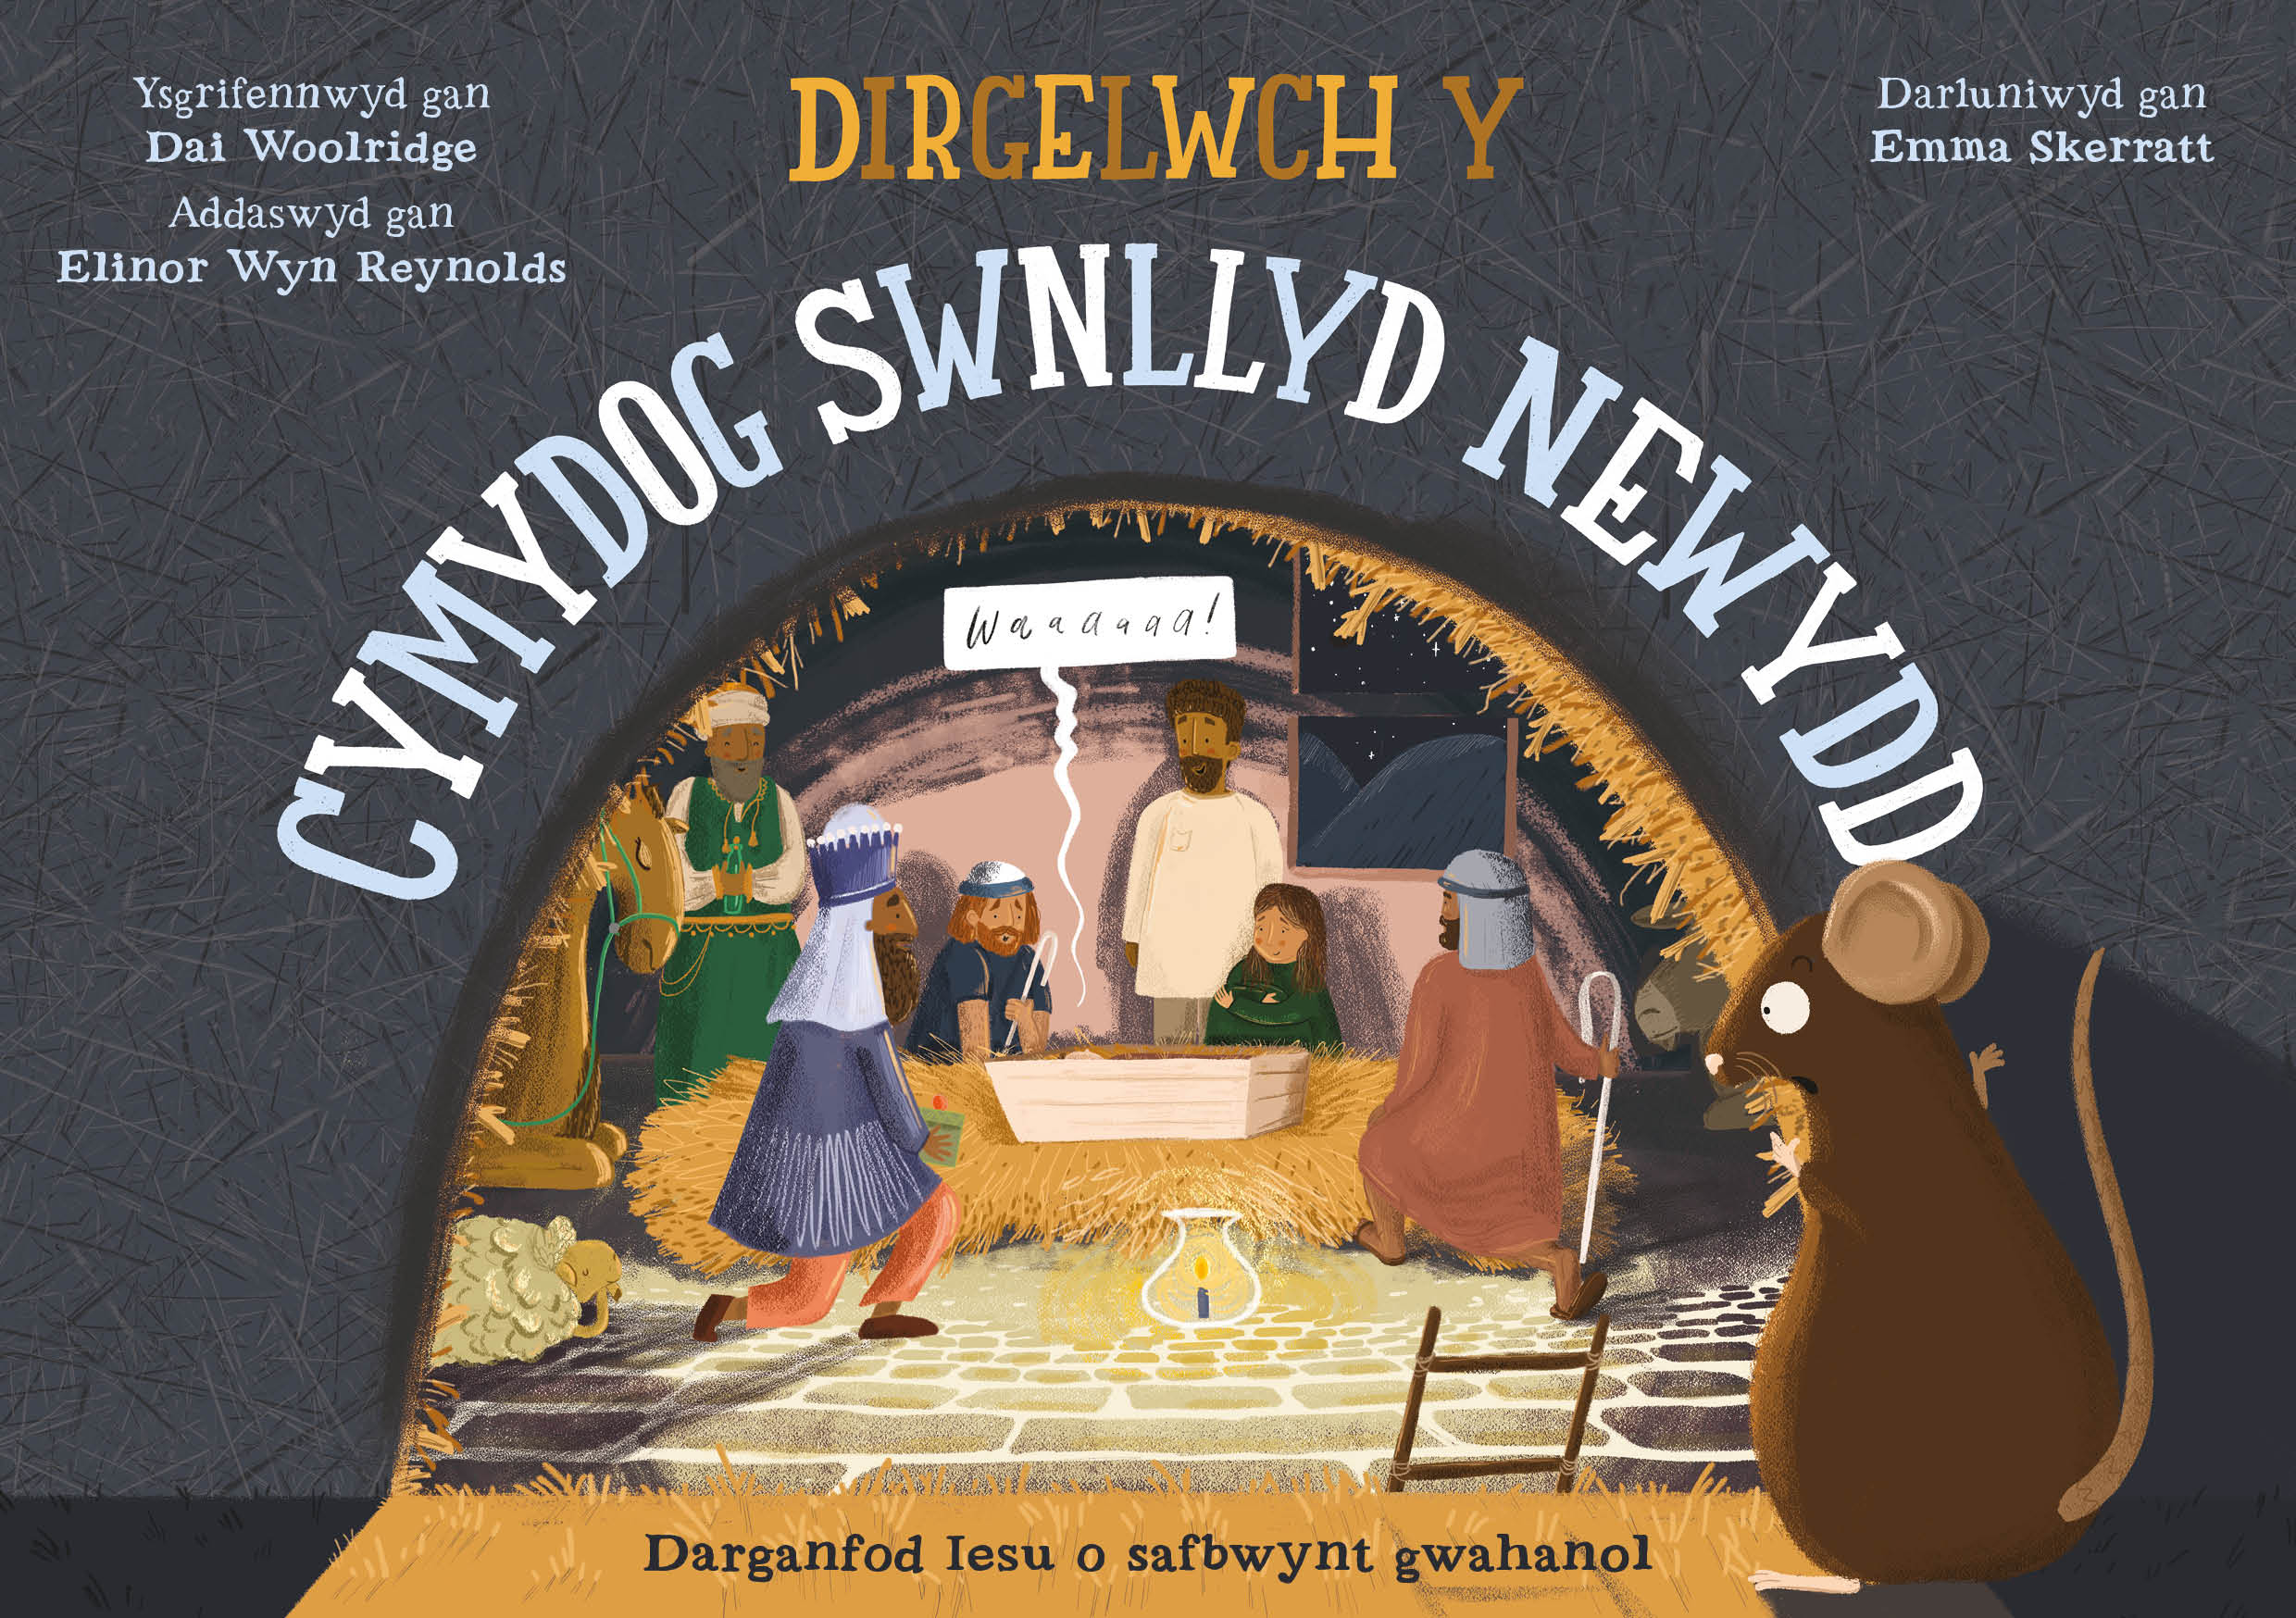 Dirgelwch y Cymydog Swnllyd Newydd